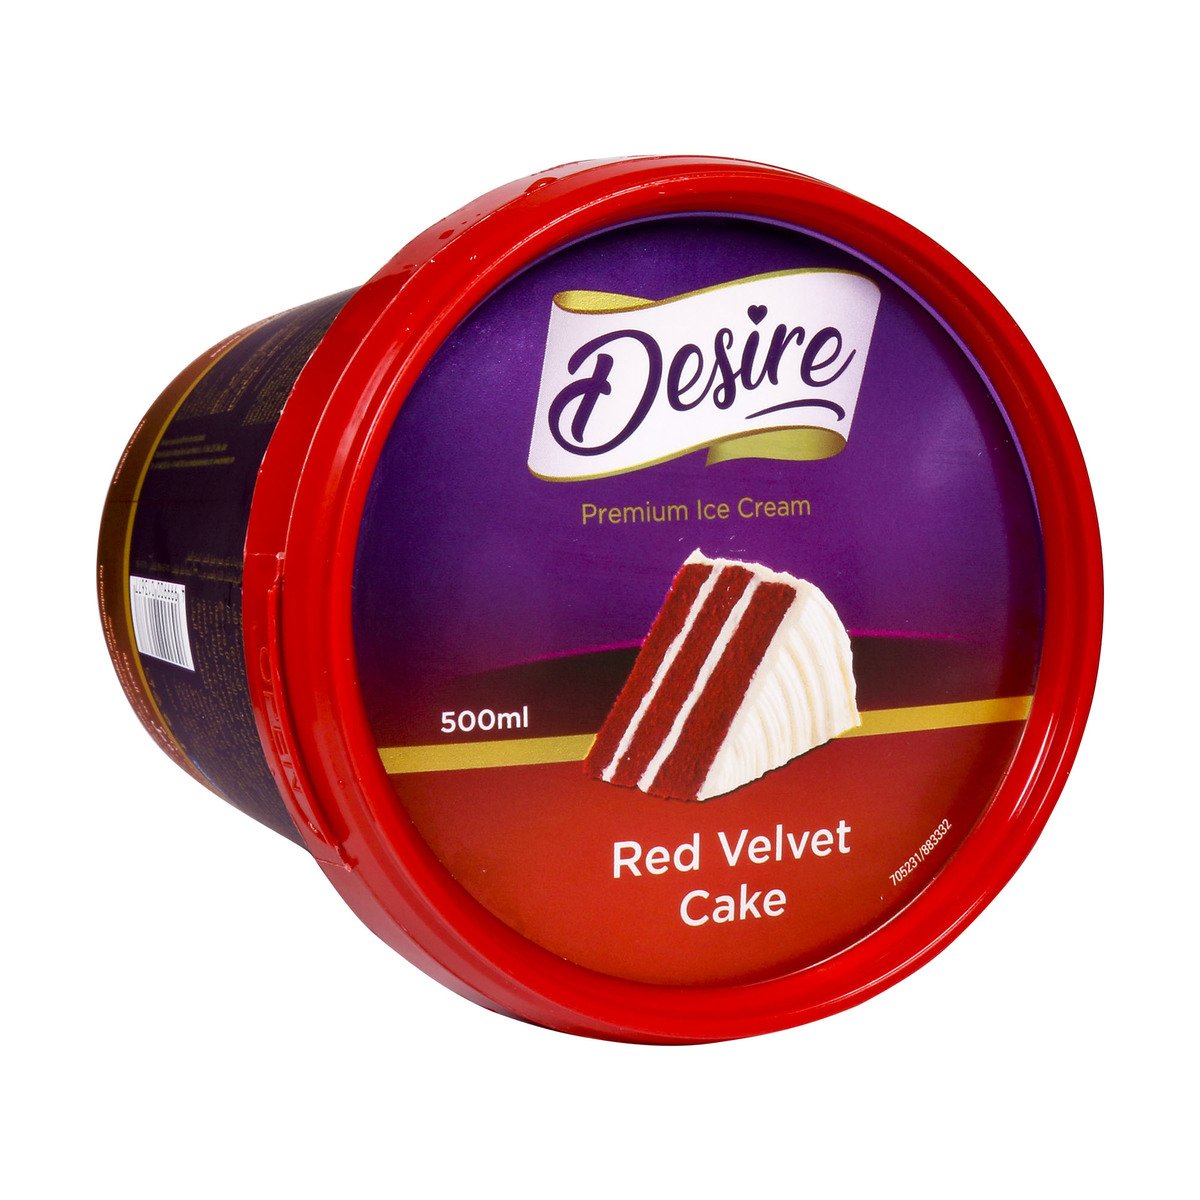 Desire Premium Ice Cream Red Velvet Cake 500ml